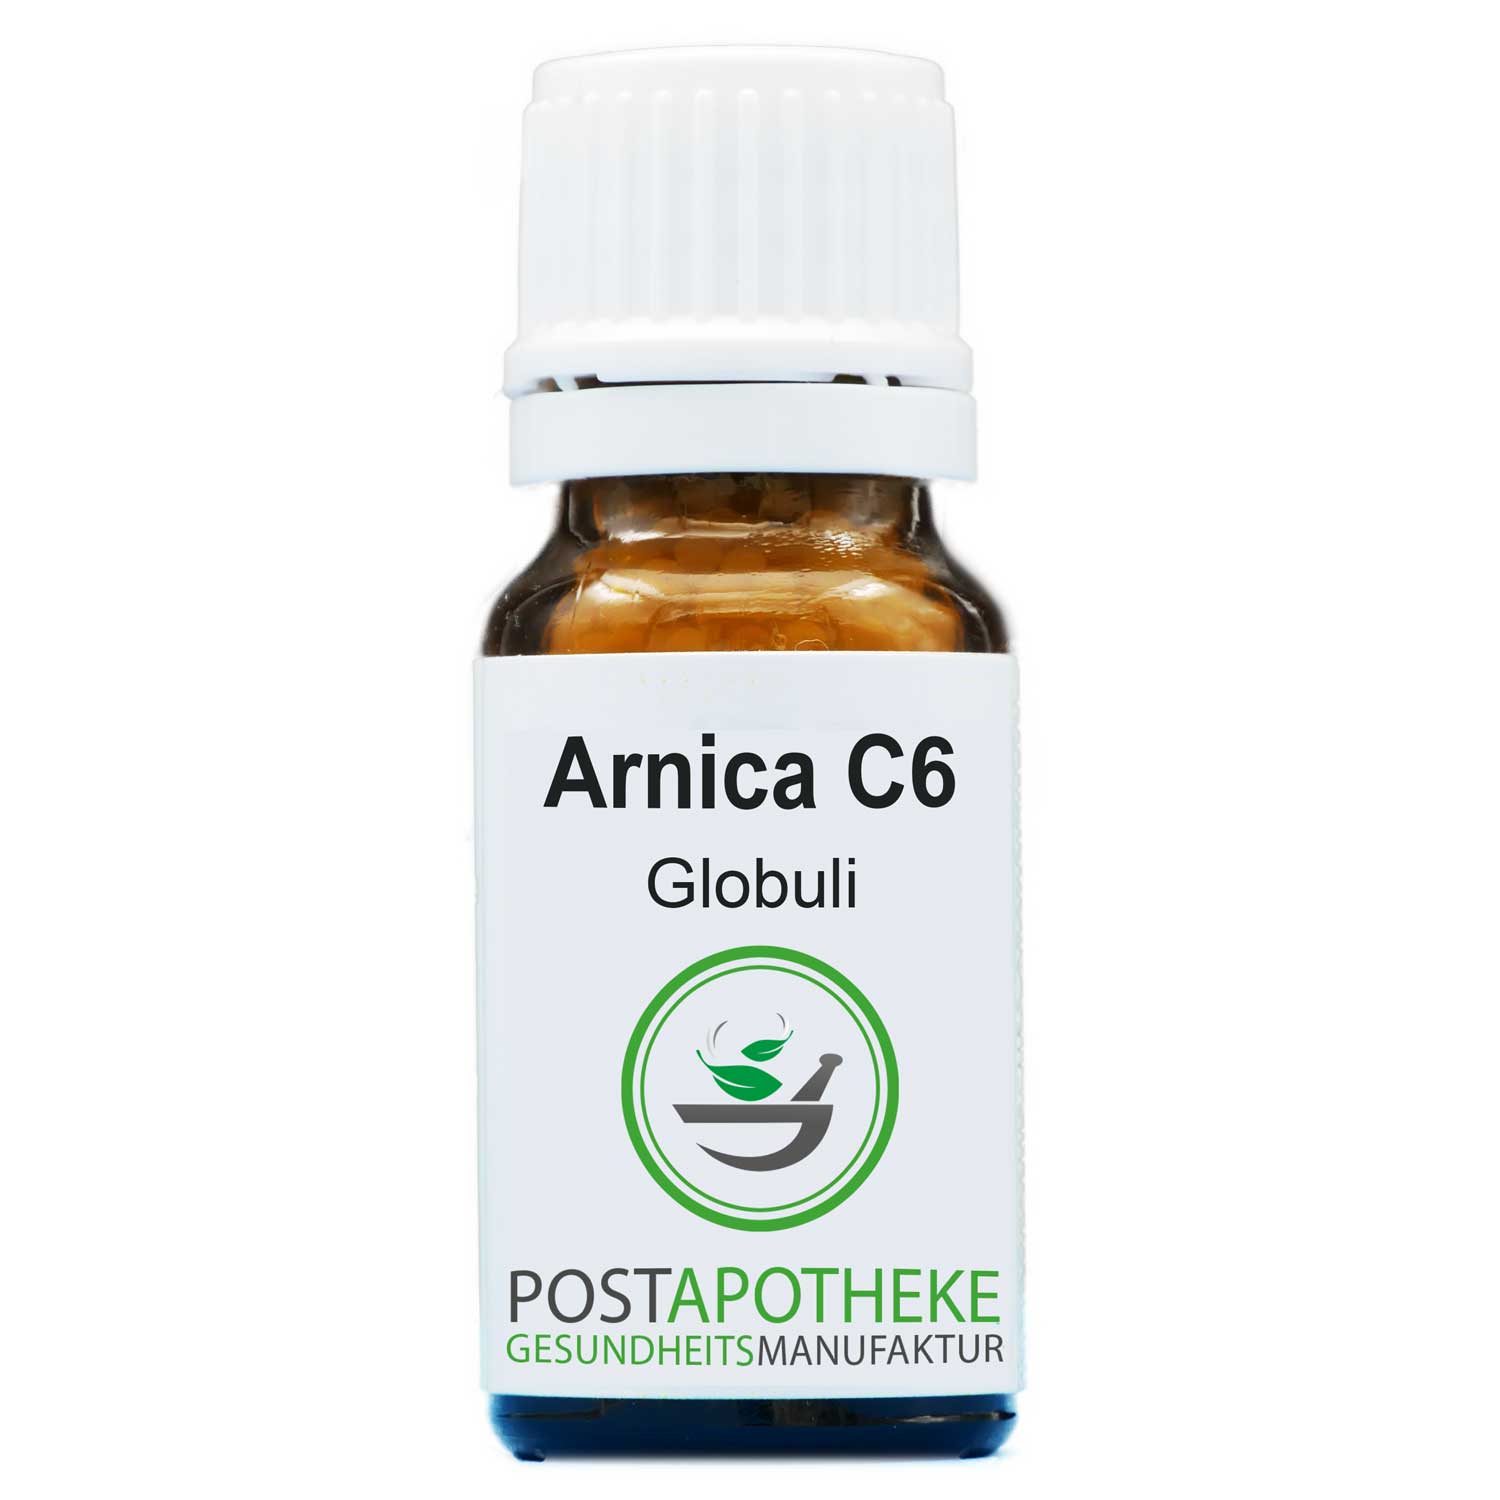 Arnica-c6-globuli-post-apotheke-homoeopathisch-top-qualitaet-guenstig kaufen